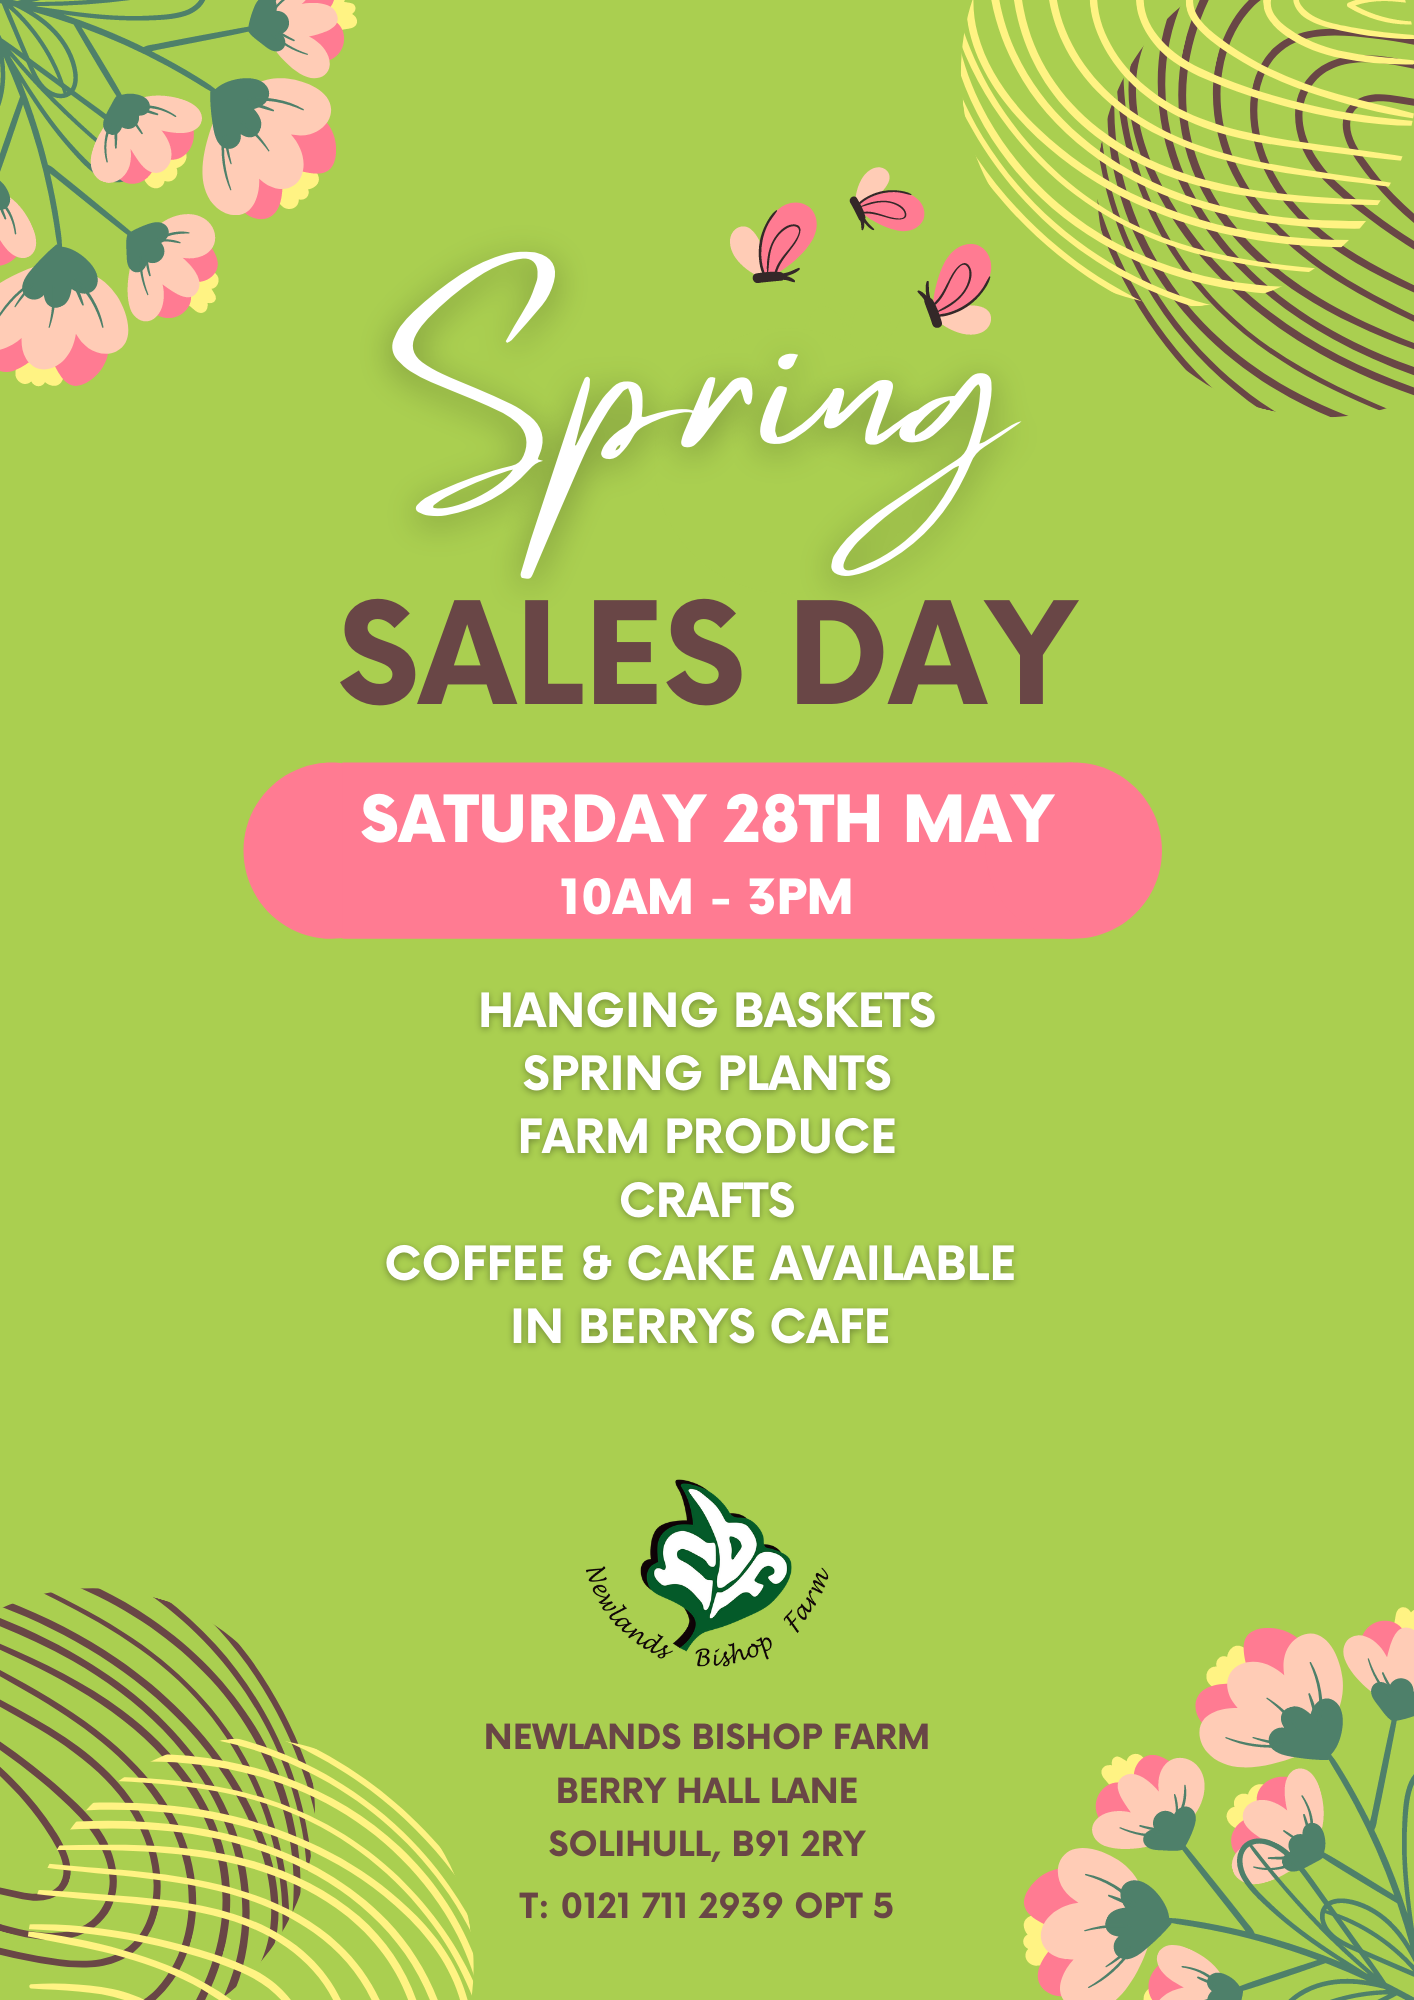 Spring Sales Day At Newlands Bishop Farm 28th May 2022